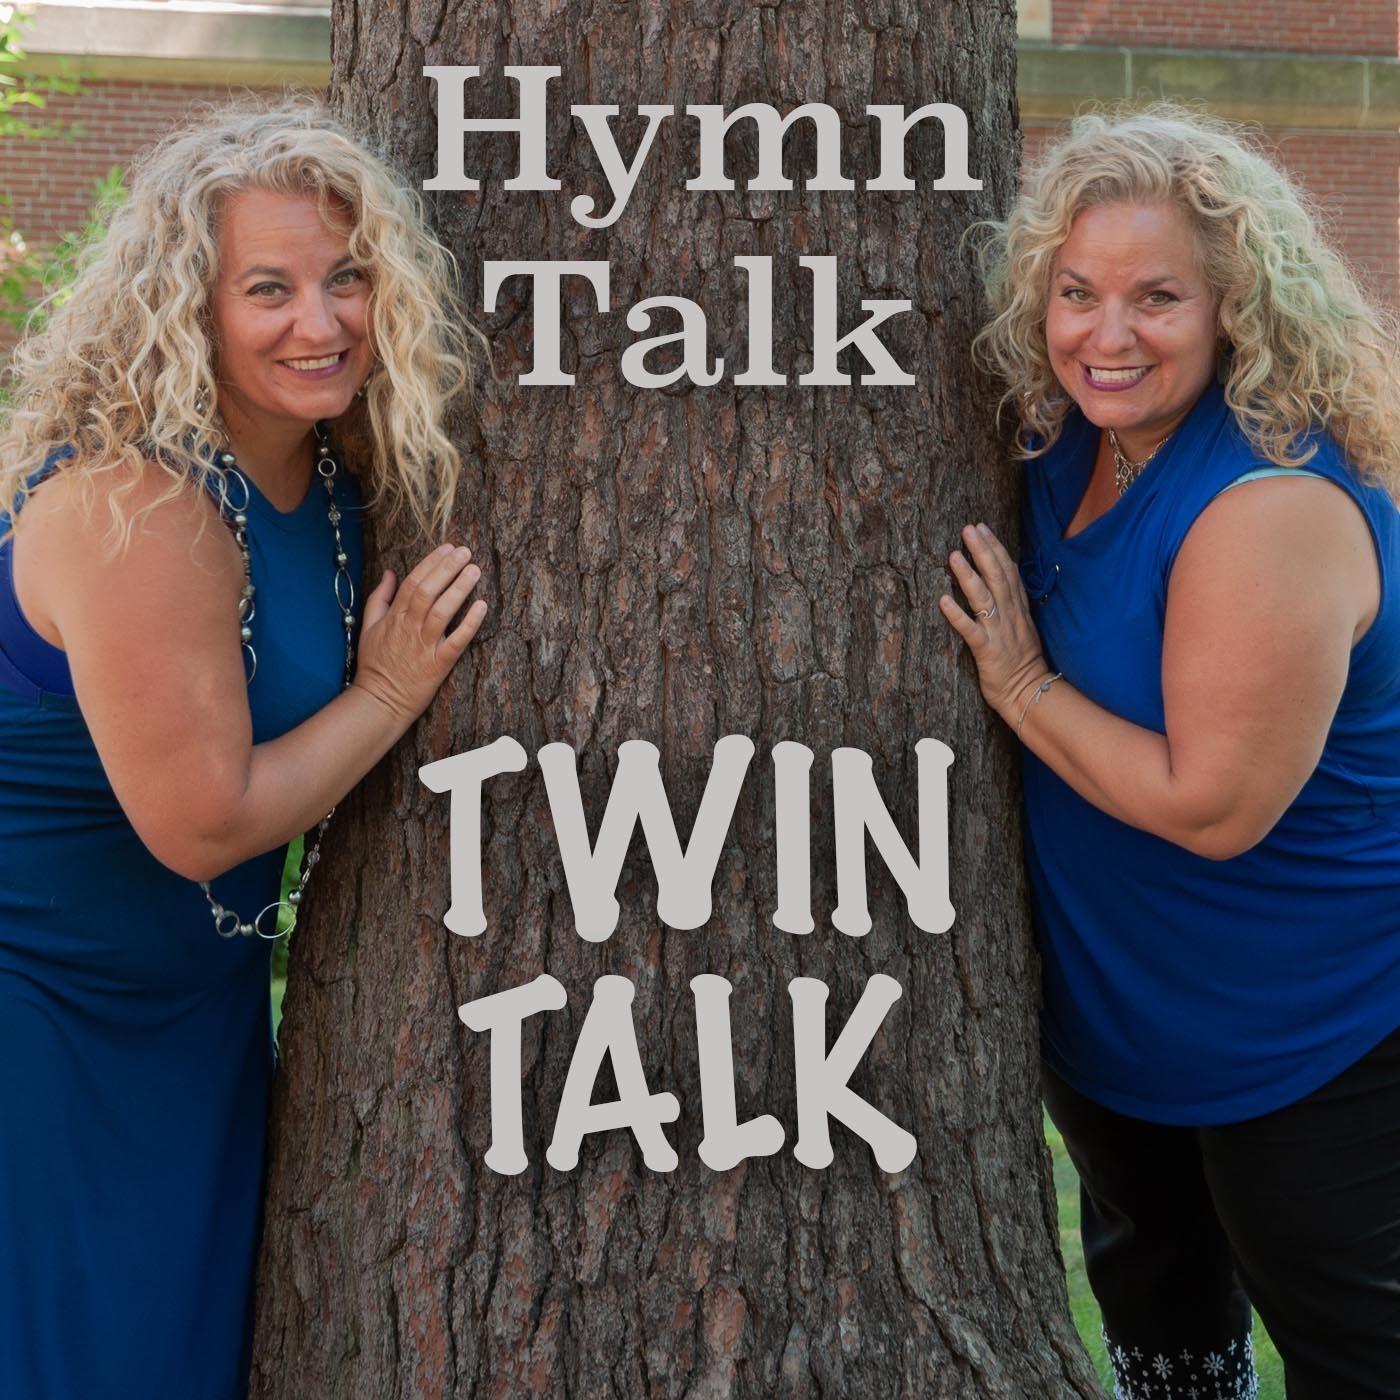 Hymn Talk Twin Talk